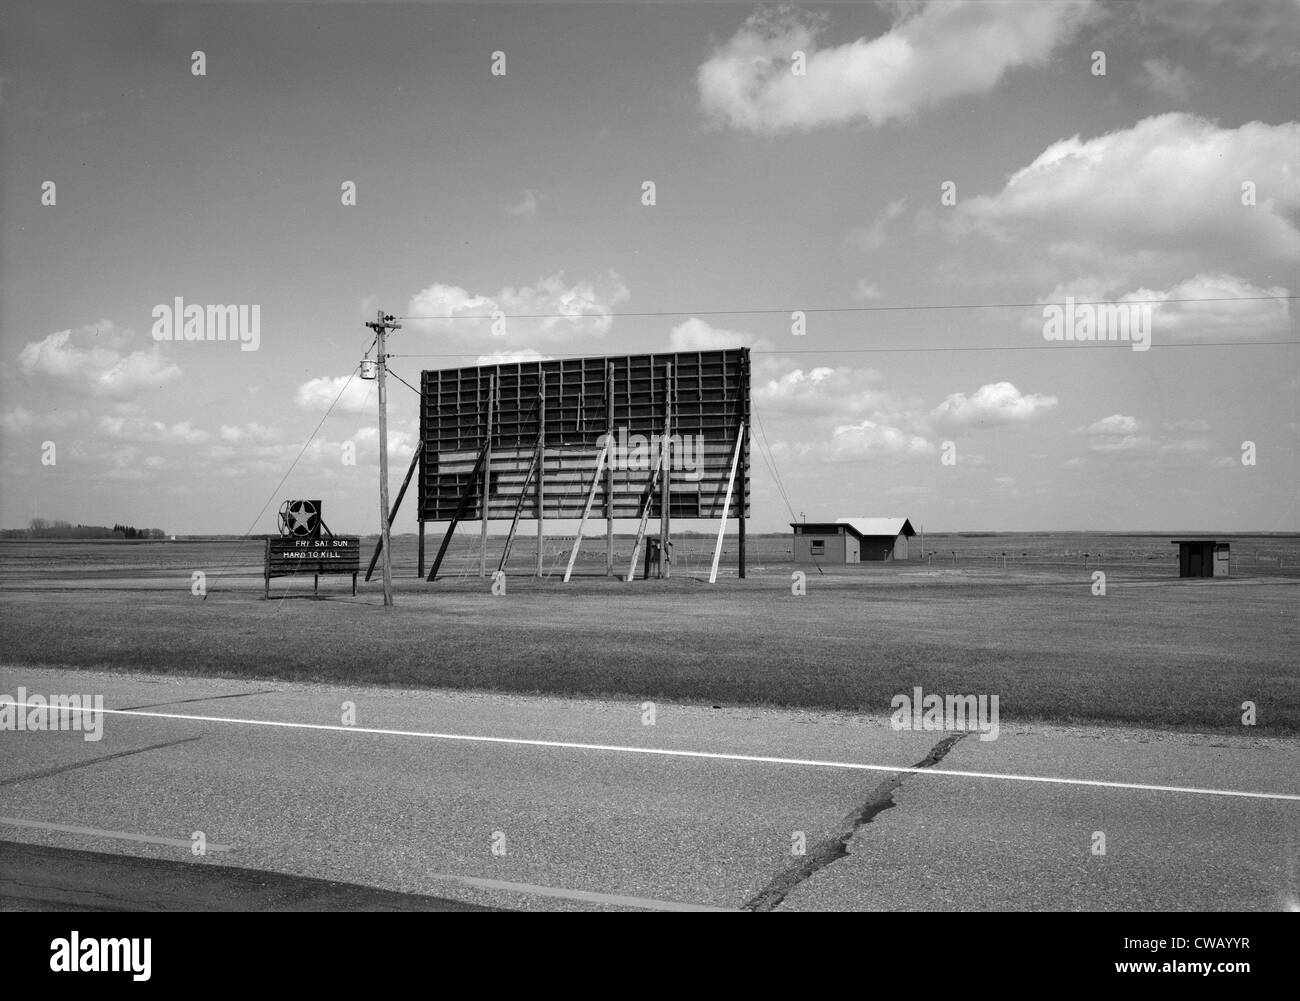 La Ville Mahnomen Drive-In Movie Theatre, U.S. Route 59, à l'autoroute 200, du Minnesota (Minnesota), circa Mahnomen des années 1960. Banque D'Images